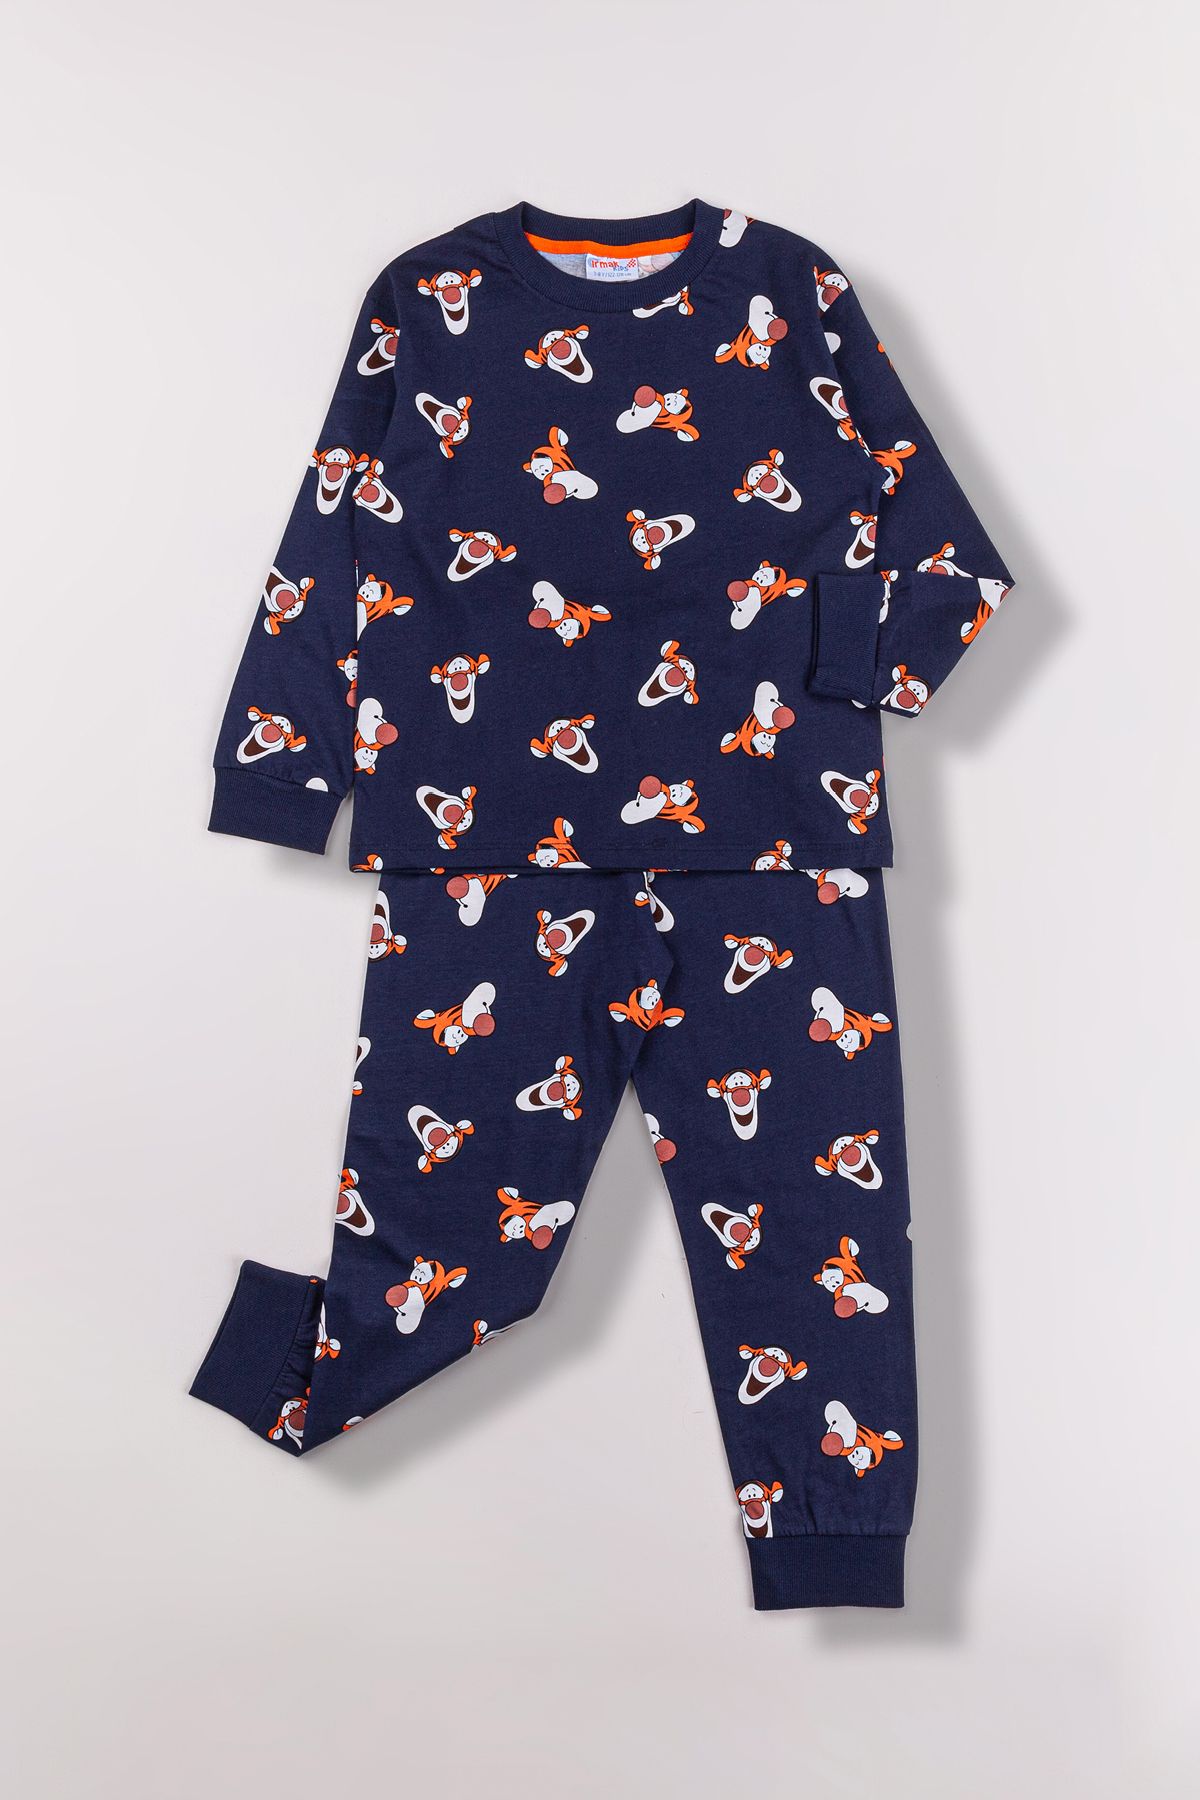 Irmak kids Kaplan Desen Erkek Çocuk Pijama Takımı